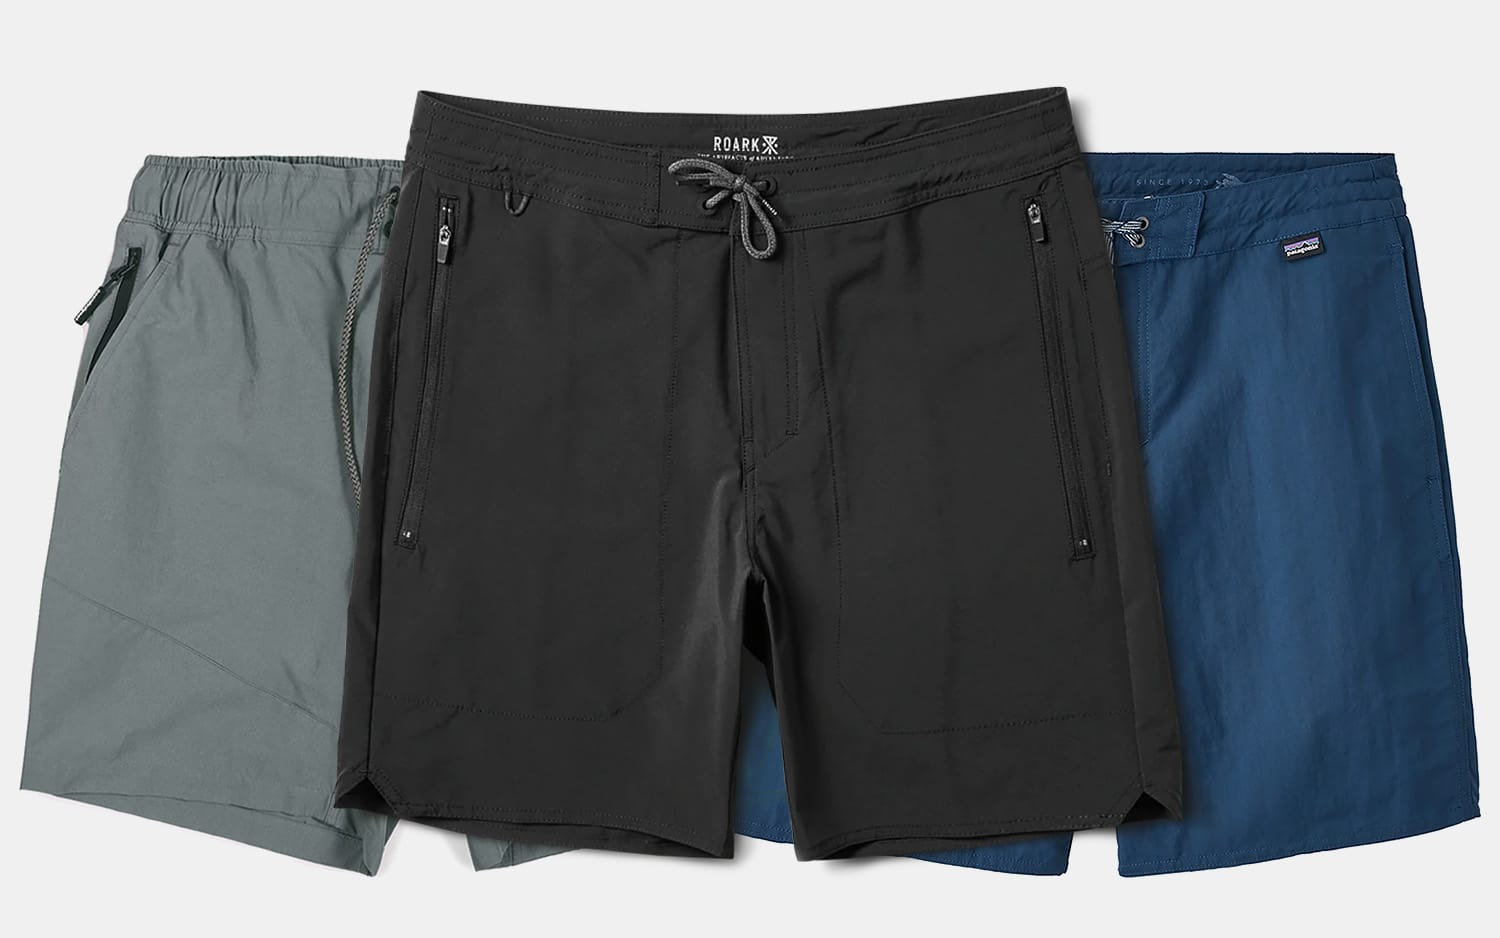 Best Men's Hybrid Shorts For Summer